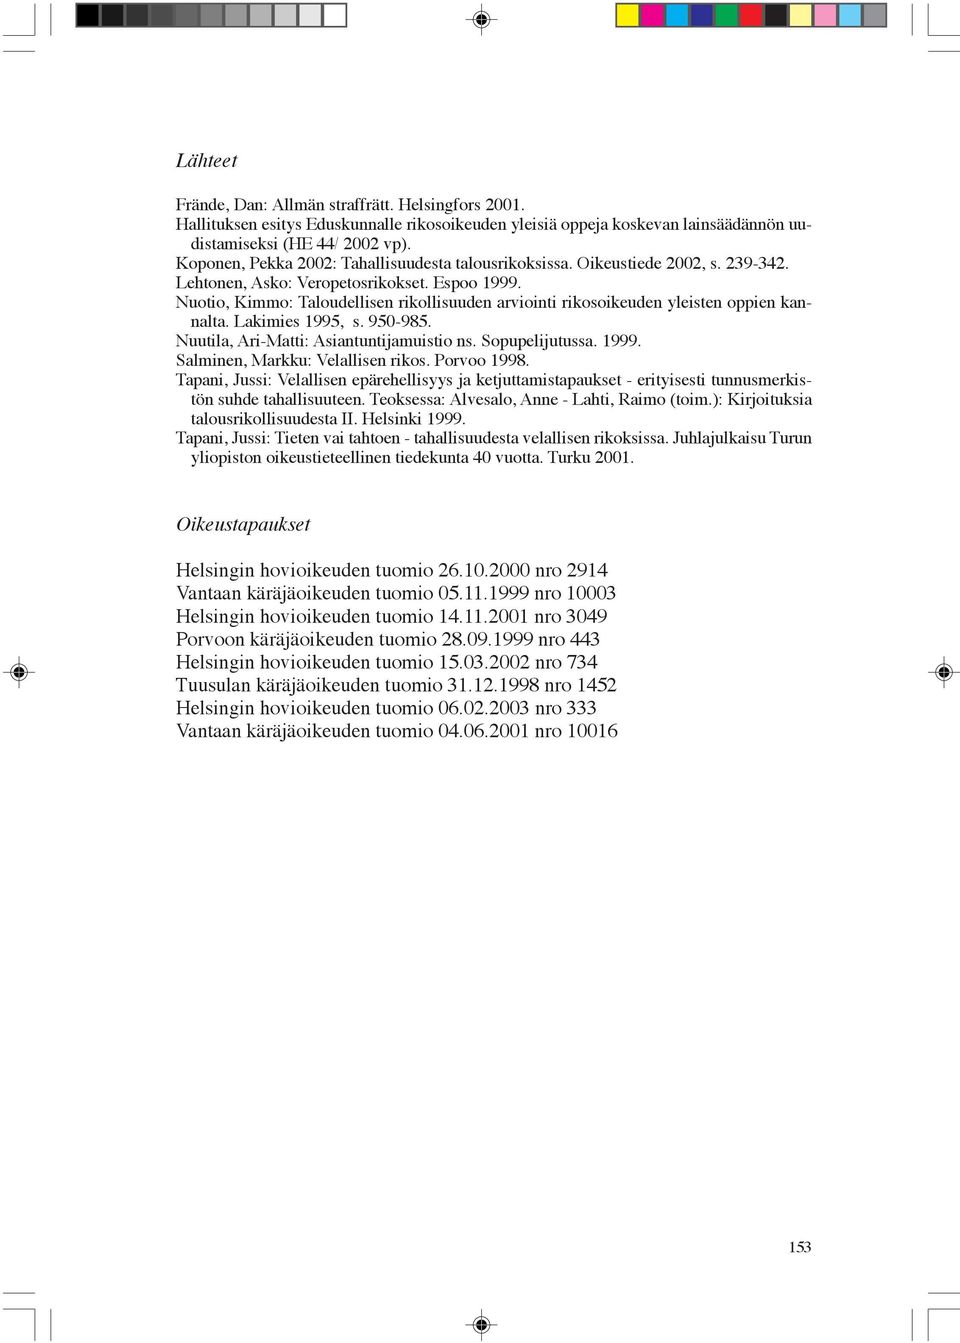 Nuotio, Kimmo: Taloudellisen rikollisuuden arviointi rikosoikeuden yleisten oppien kannalta. Lakimies 1995, s. 950-985. Nuutila, Ari-Matti: Asiantuntijamuistio ns. Sopupelijutussa. 1999.